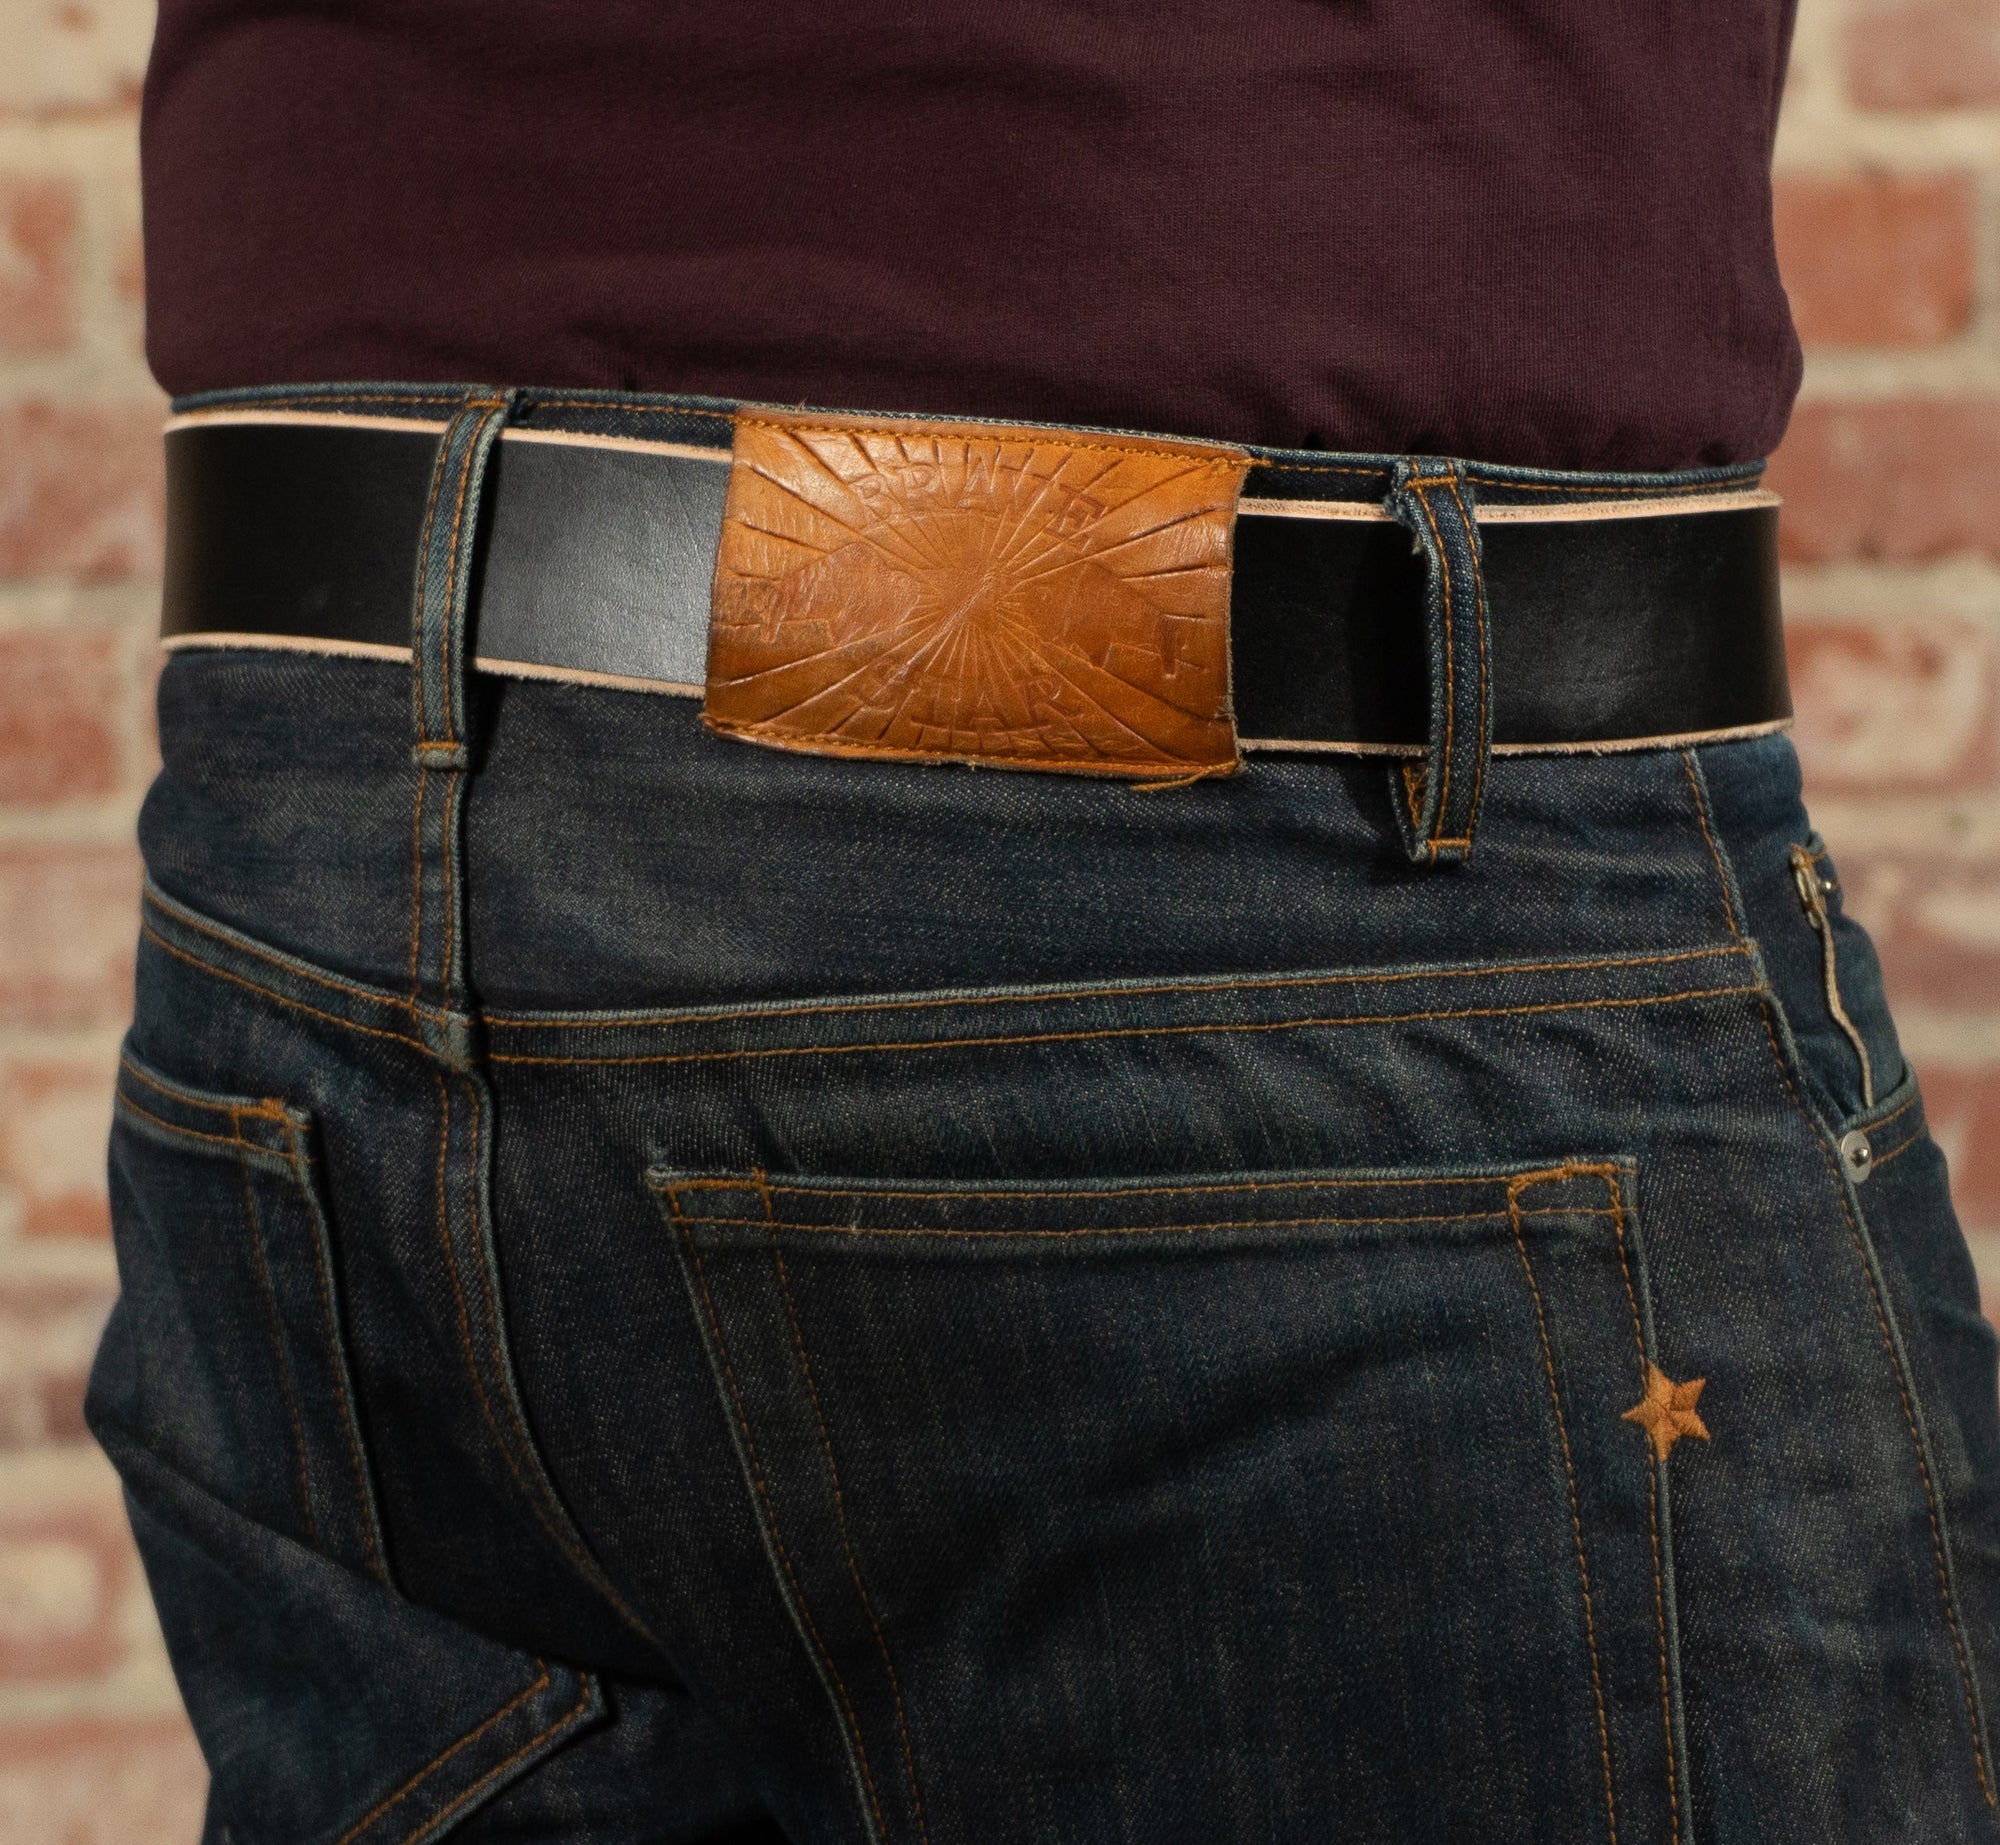 XW Leather Belt in Black Tea-Core (X-Wide 1.75")